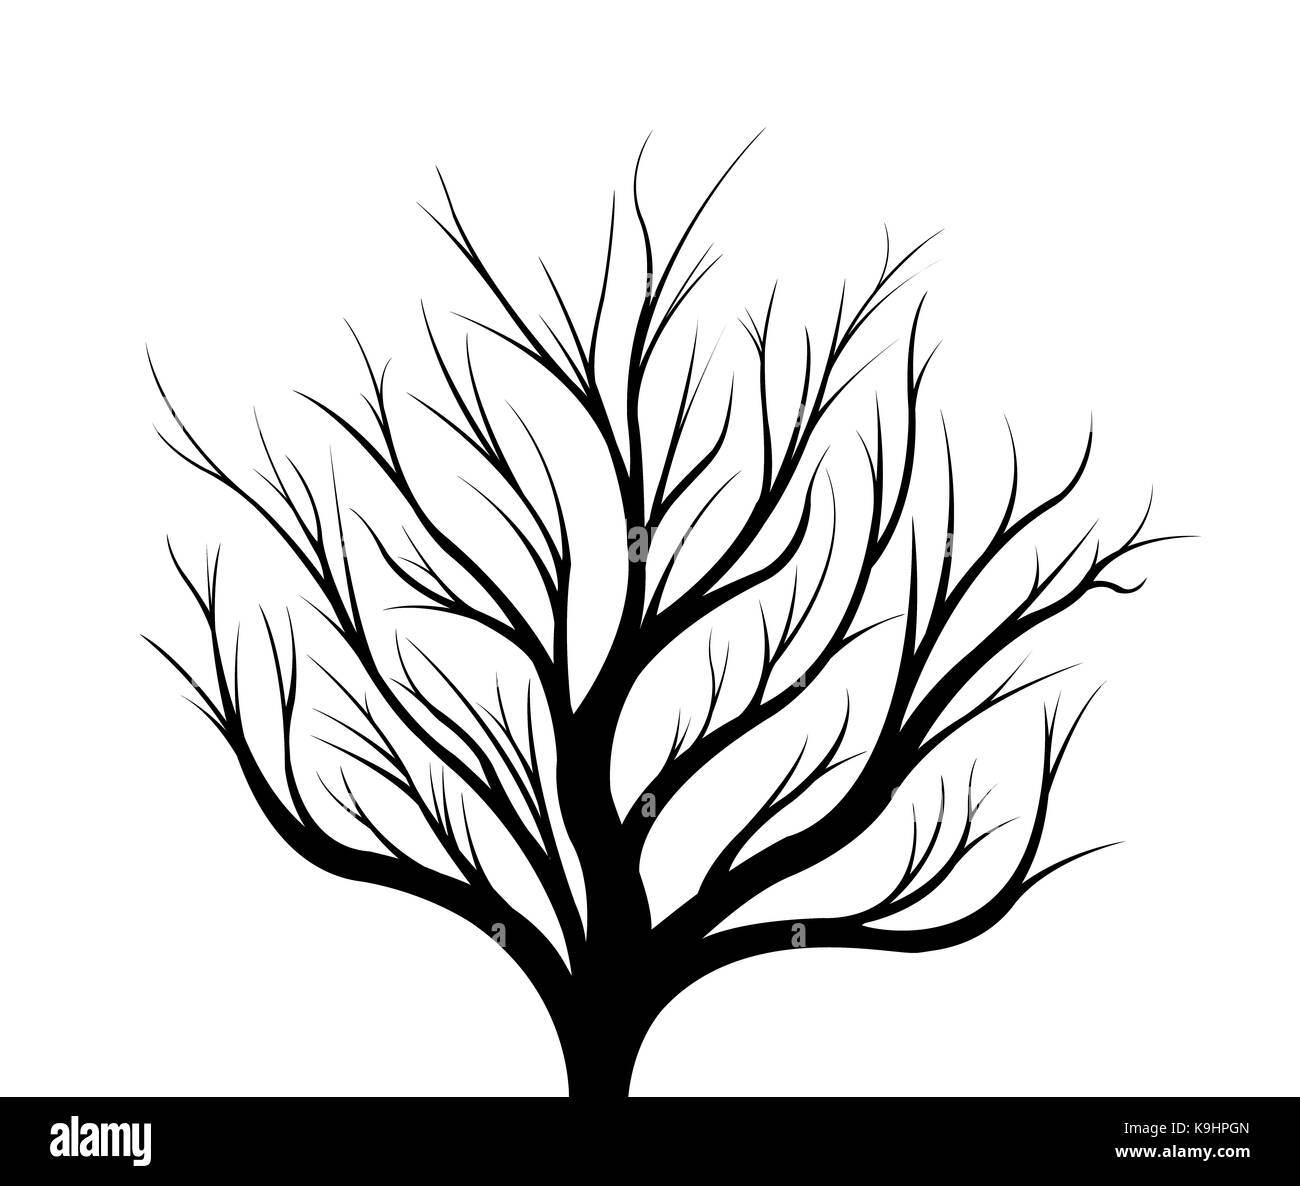 Silueta negra de un árbol sobre un fondo blanco. Ilustración. Foto de stock